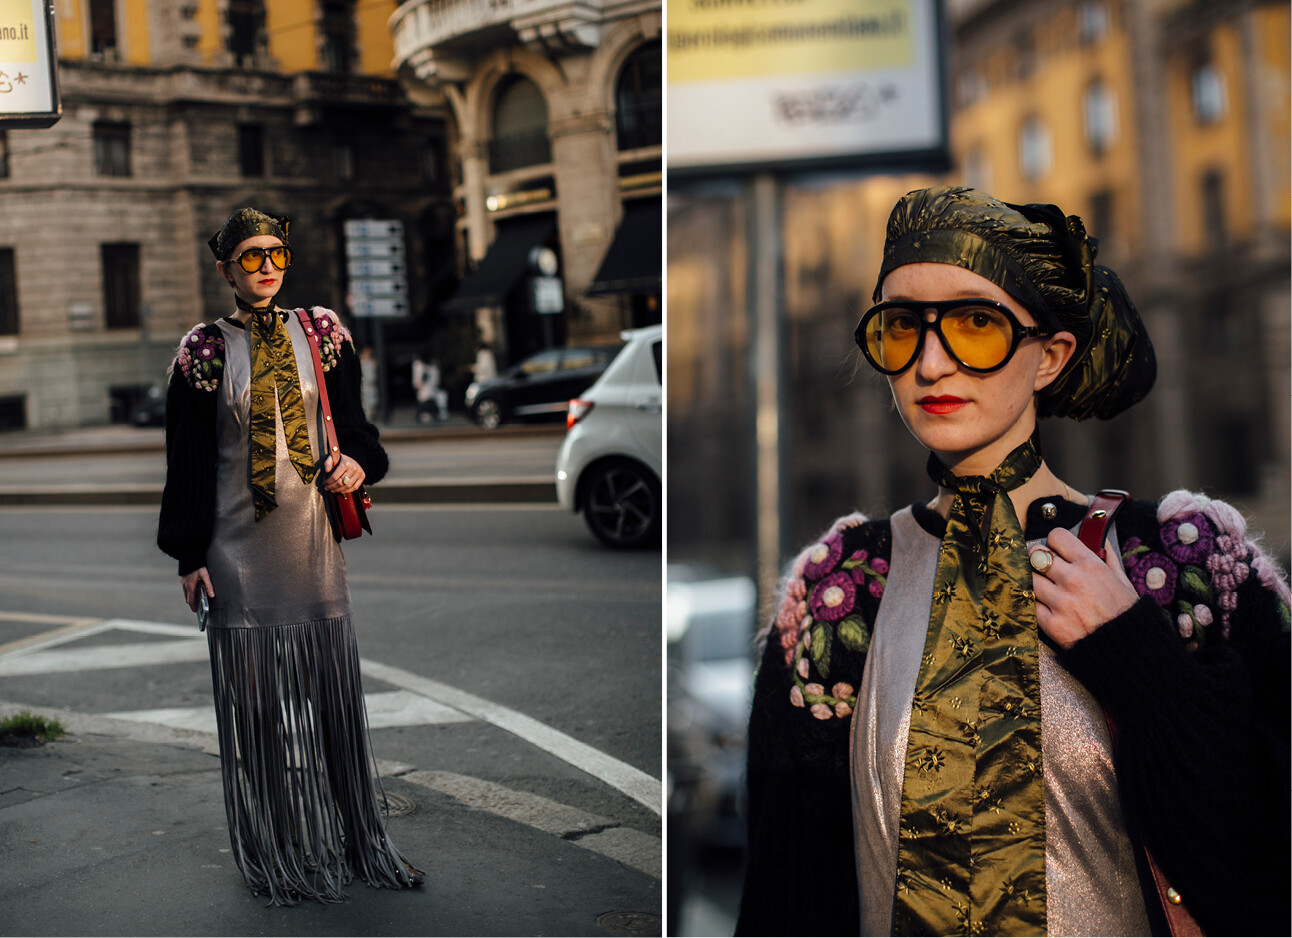 modevolk loopt met zonnebrillen over straat